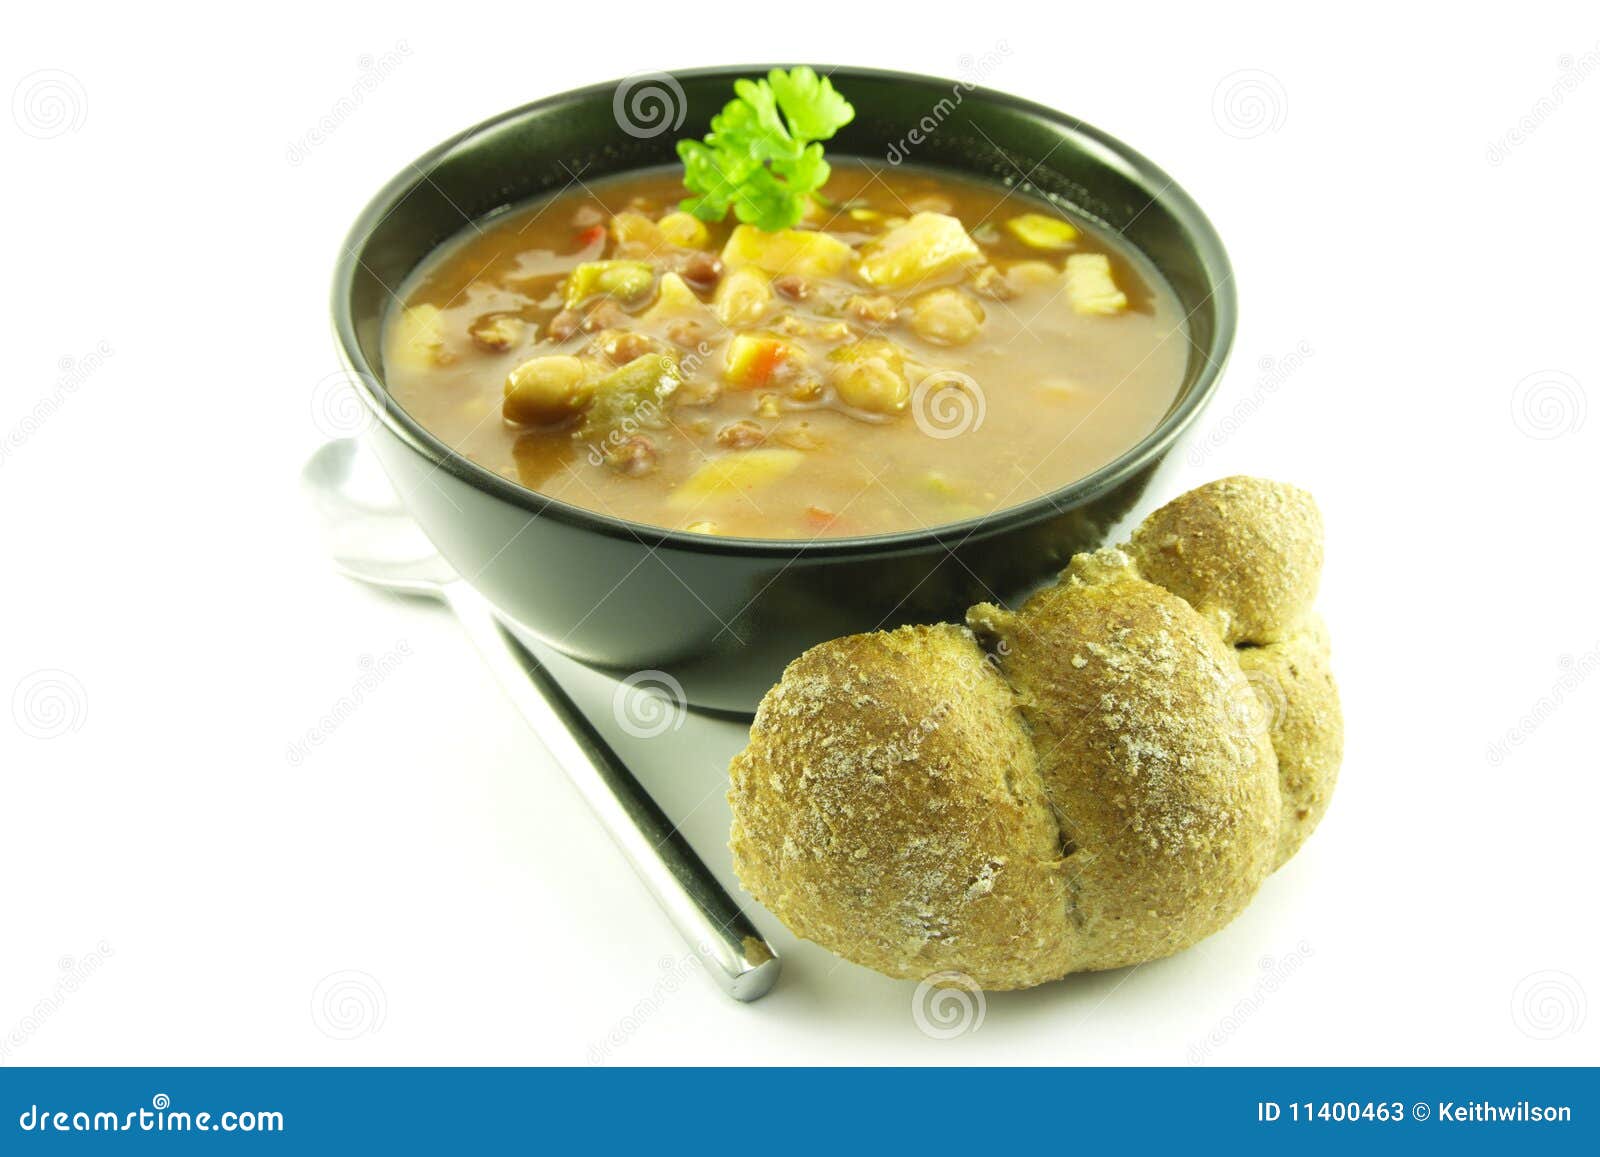 在白盘子里的豌豆汤图片下载 - 觅知网